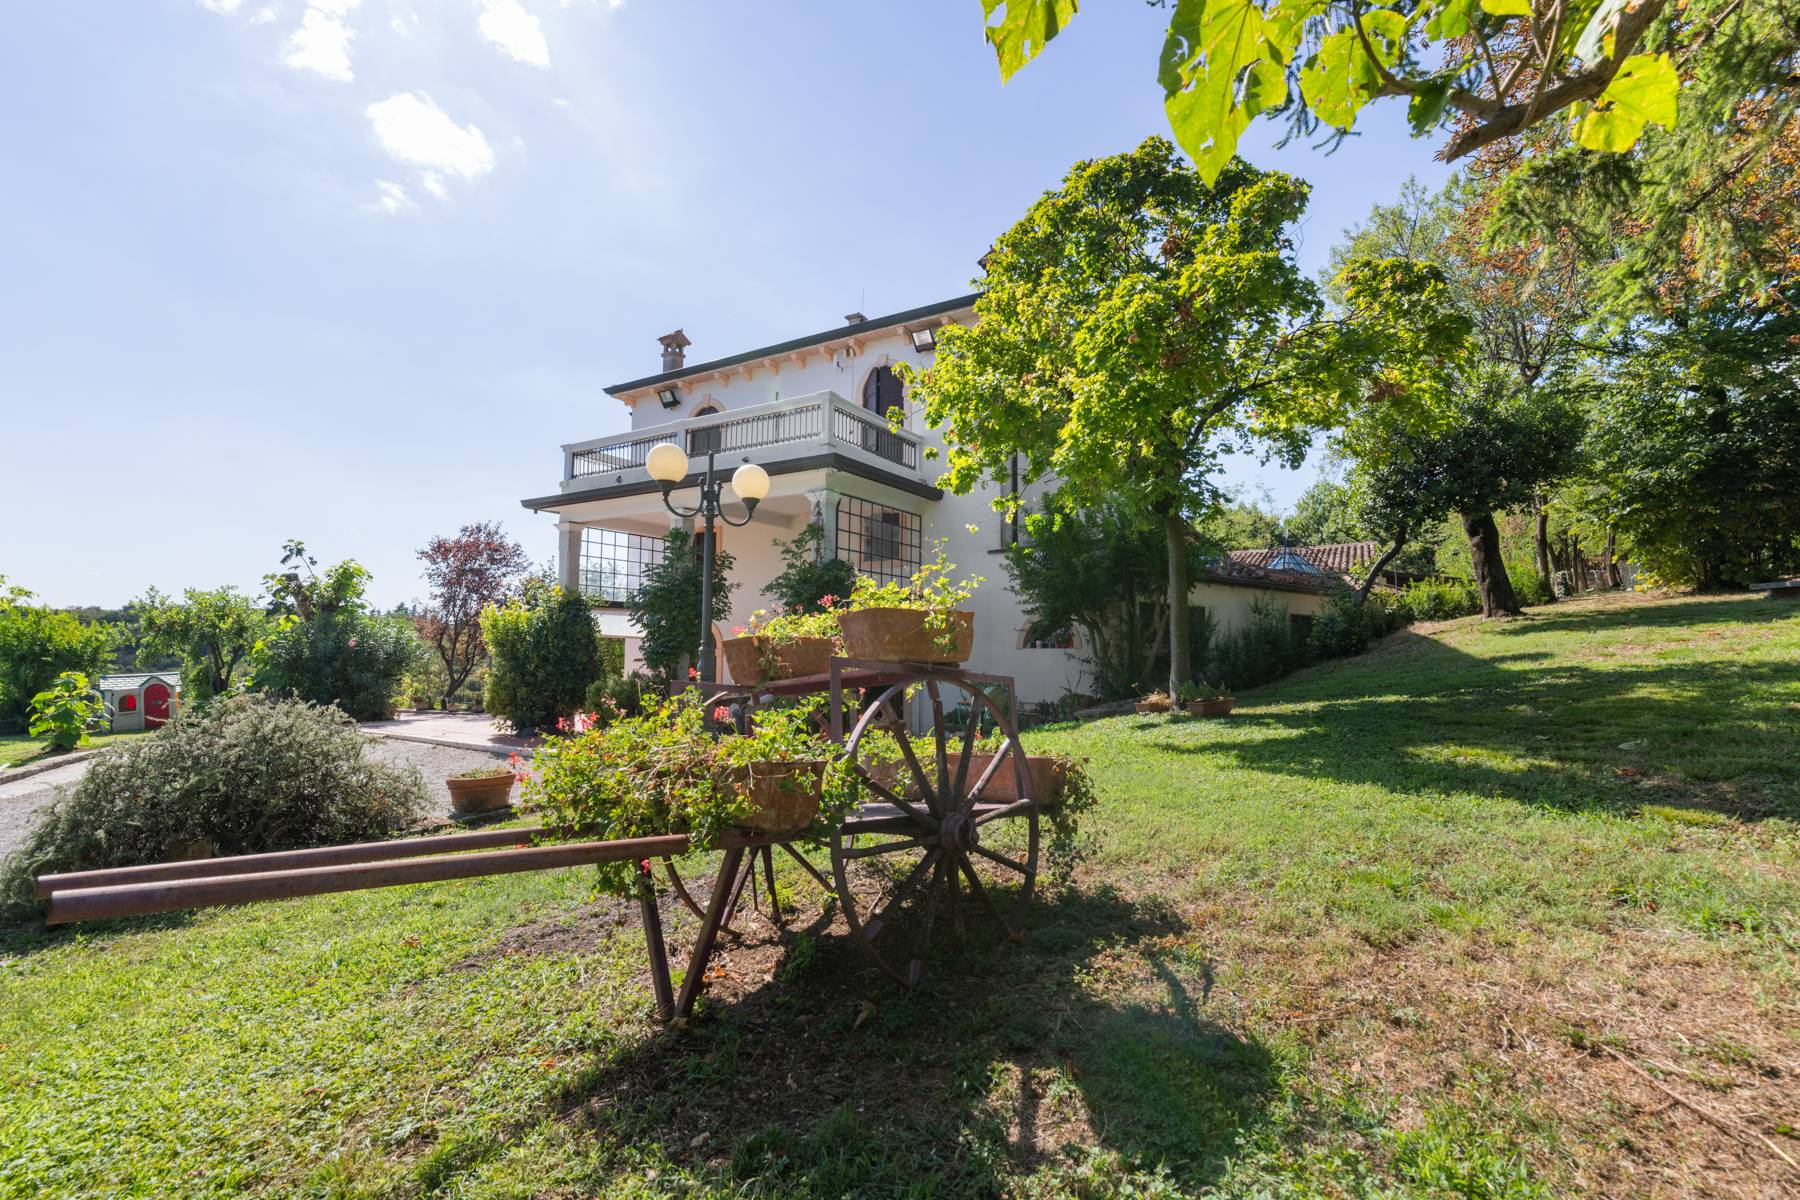 Villa in Vendita a San Martino Buon Albergo: 5 locali, 900 mq - Foto 7